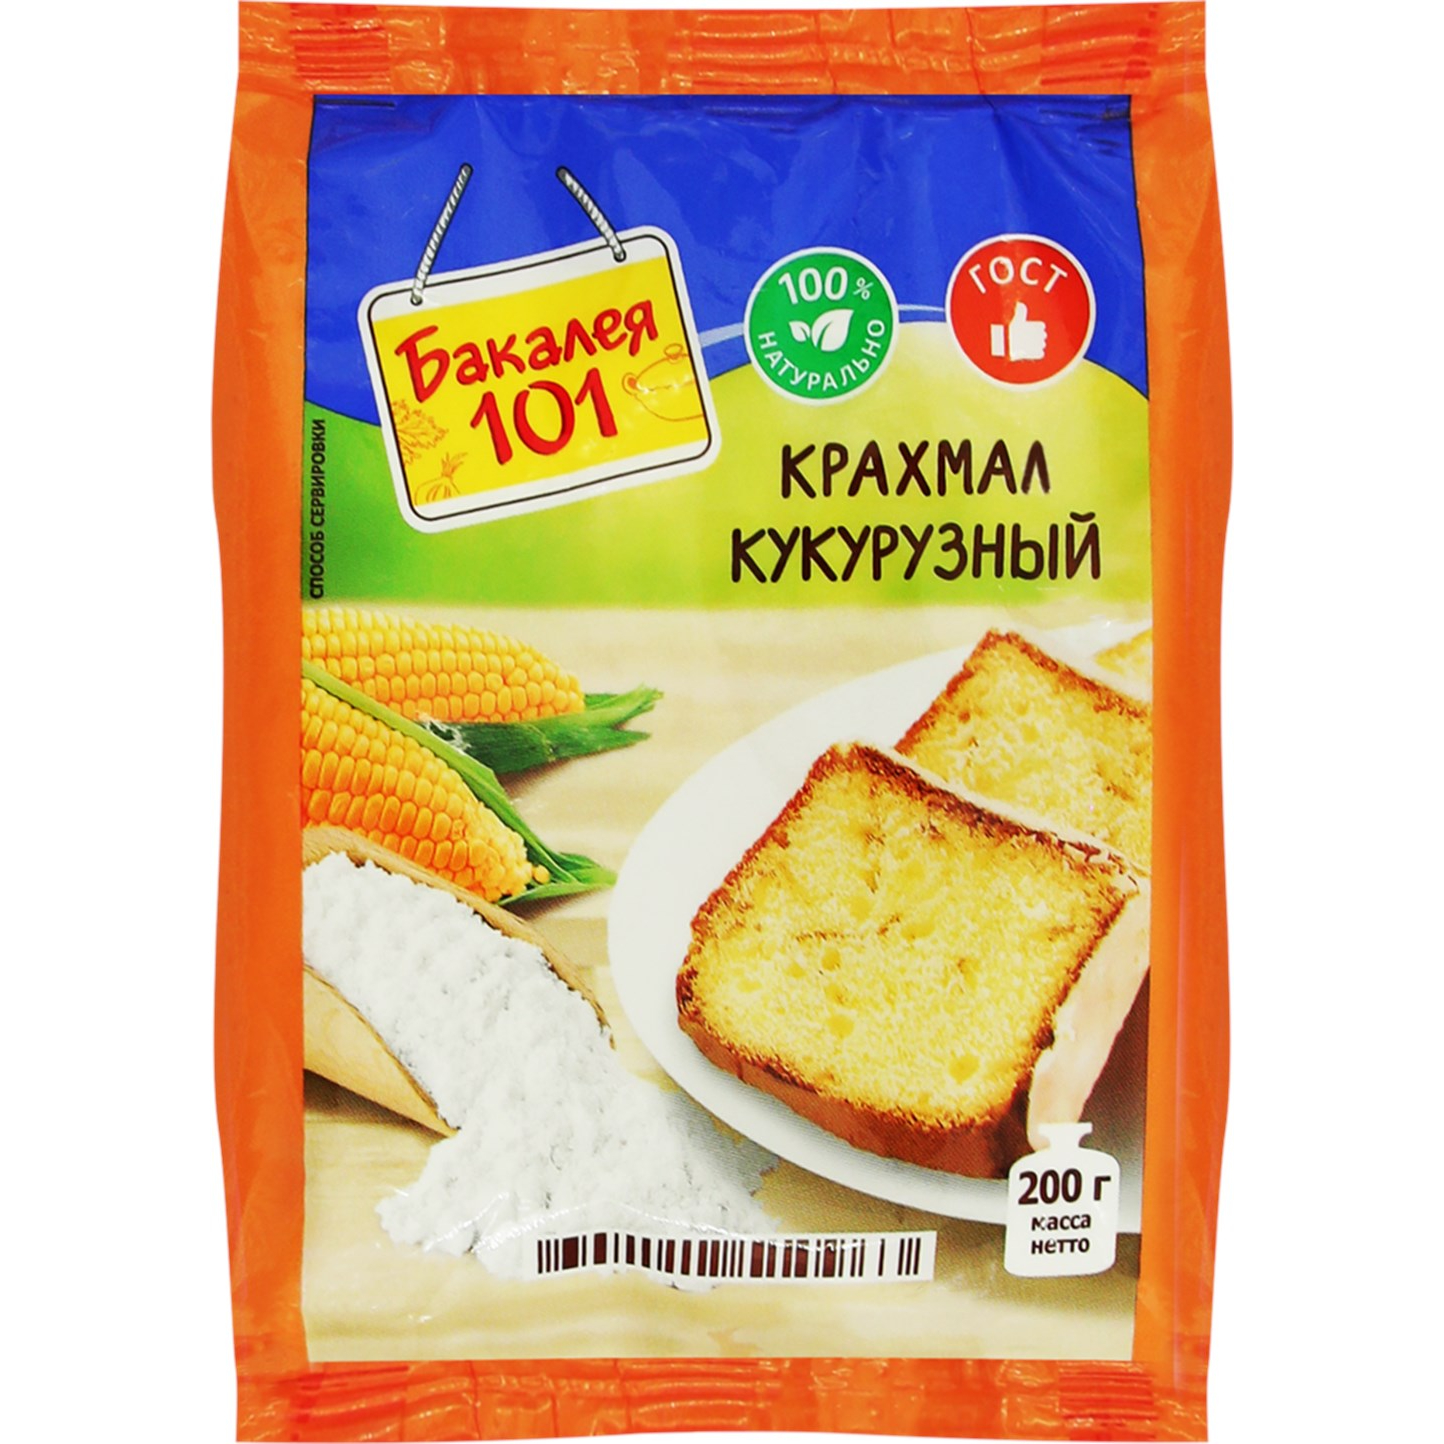 Крахмал кукурузный Русский продукт Бакалея 101 200 г харчо острый русский продукт бакалея 101 60 г